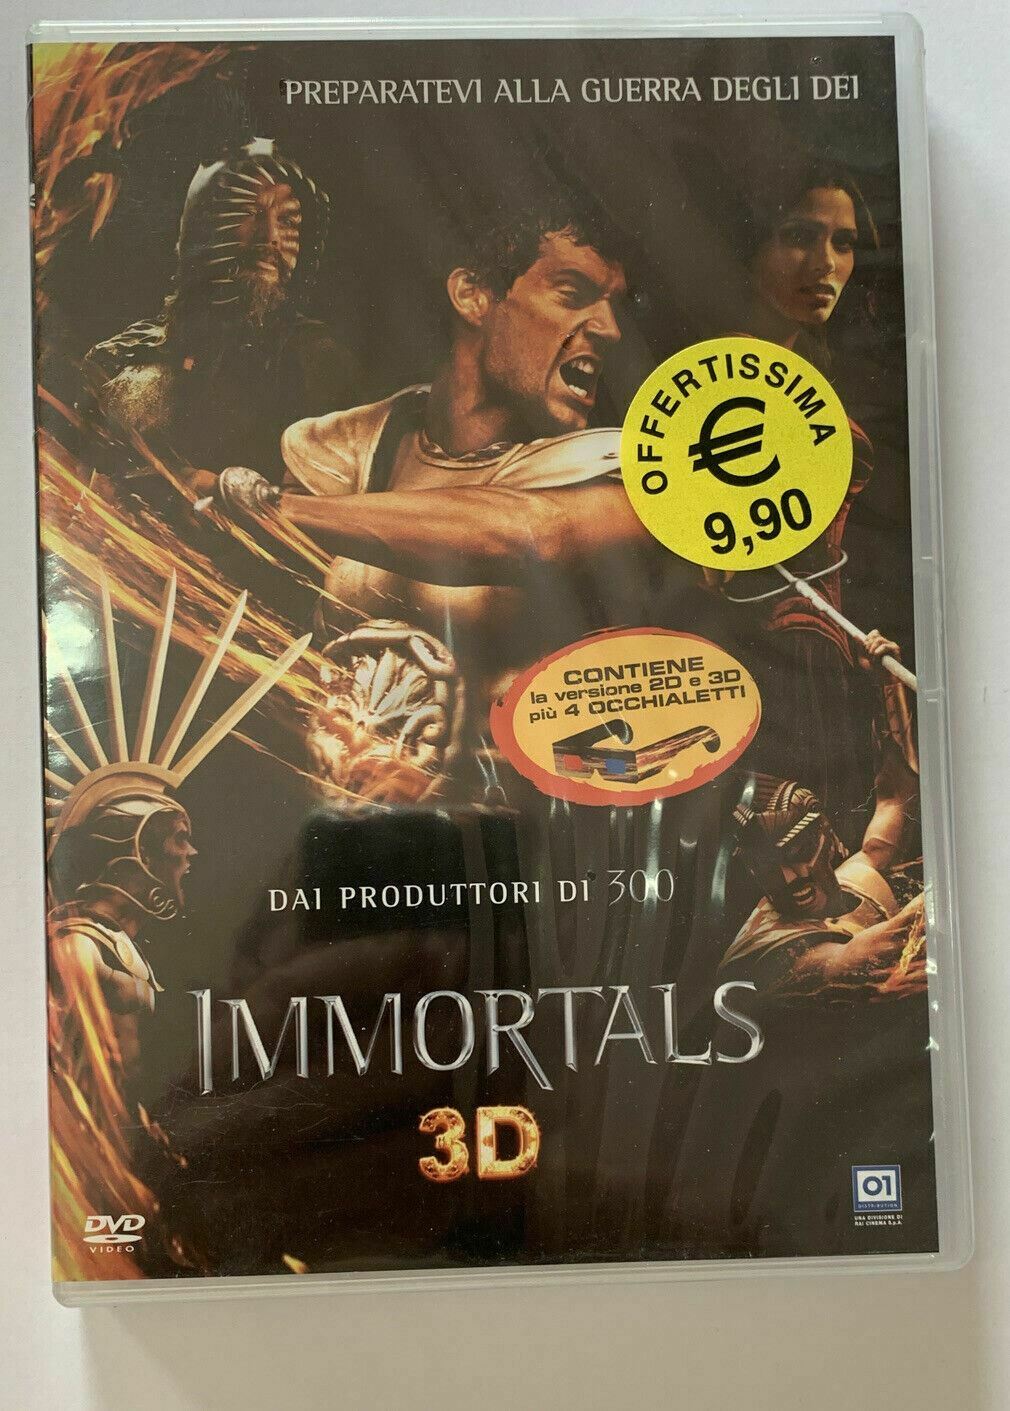 Immortals 3D (2011) DVD Versione 2D e 3D più 4 occhialetti